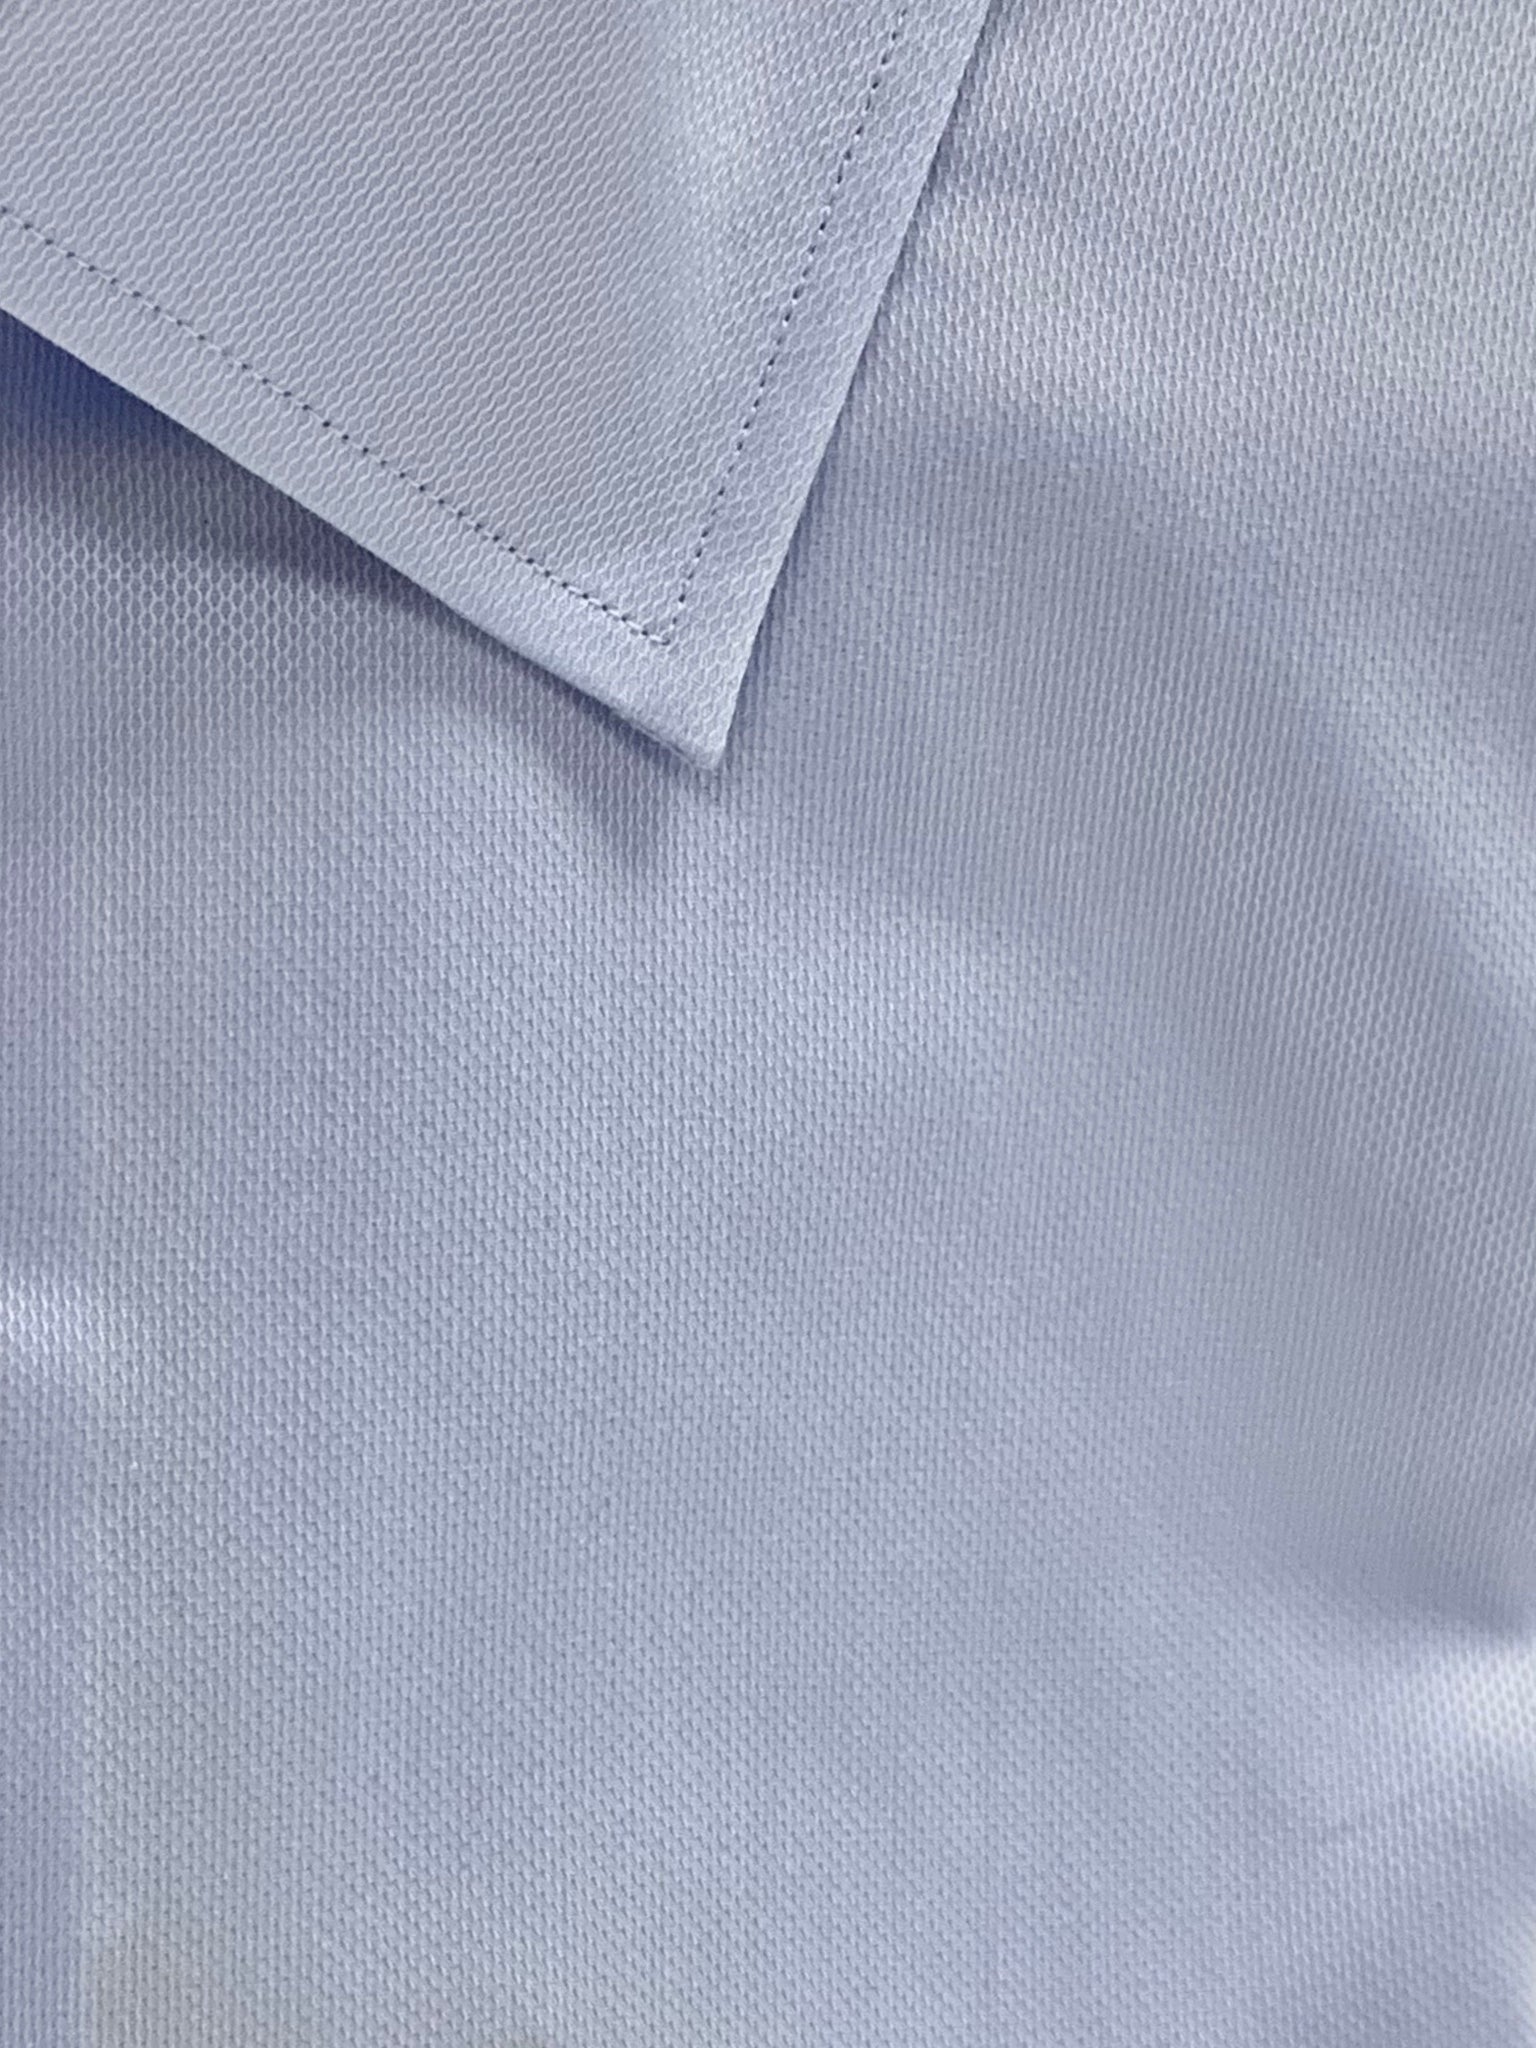 Michael Kors Dress Shirt - Blue